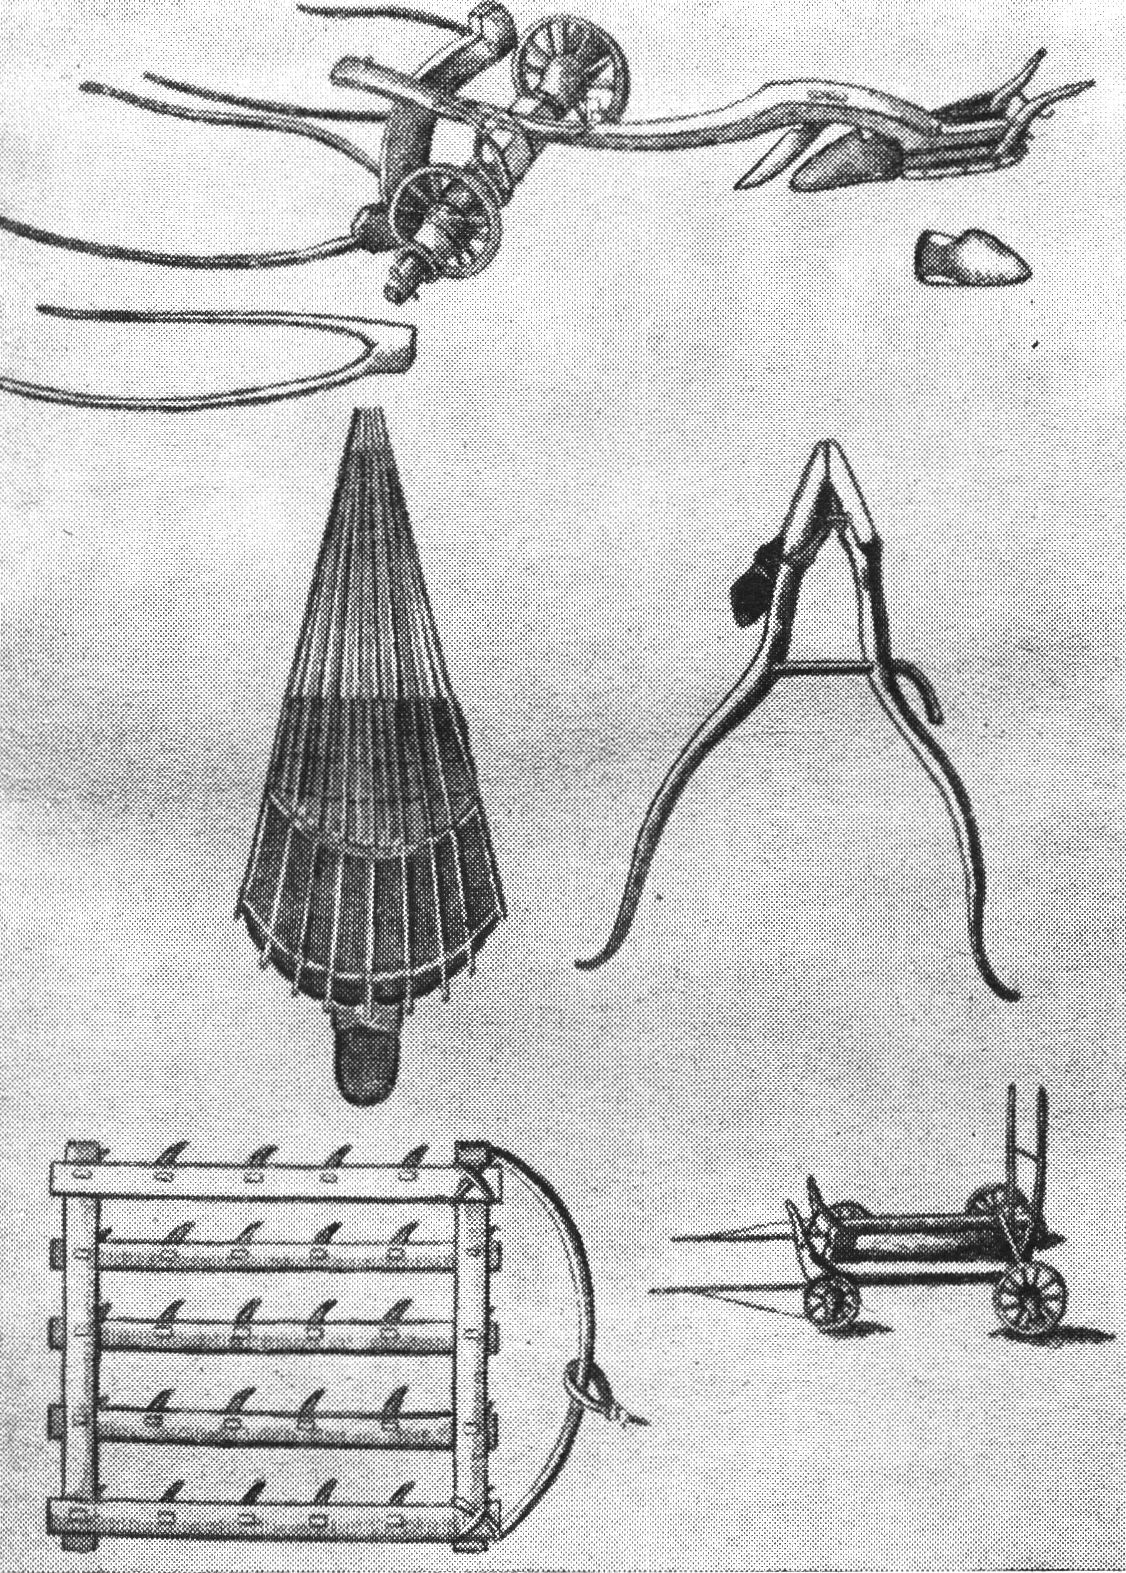 Земледельческие орудия Поволжья. Гравюра из «Дневных записок» И.И. Лепехина. 1771 год